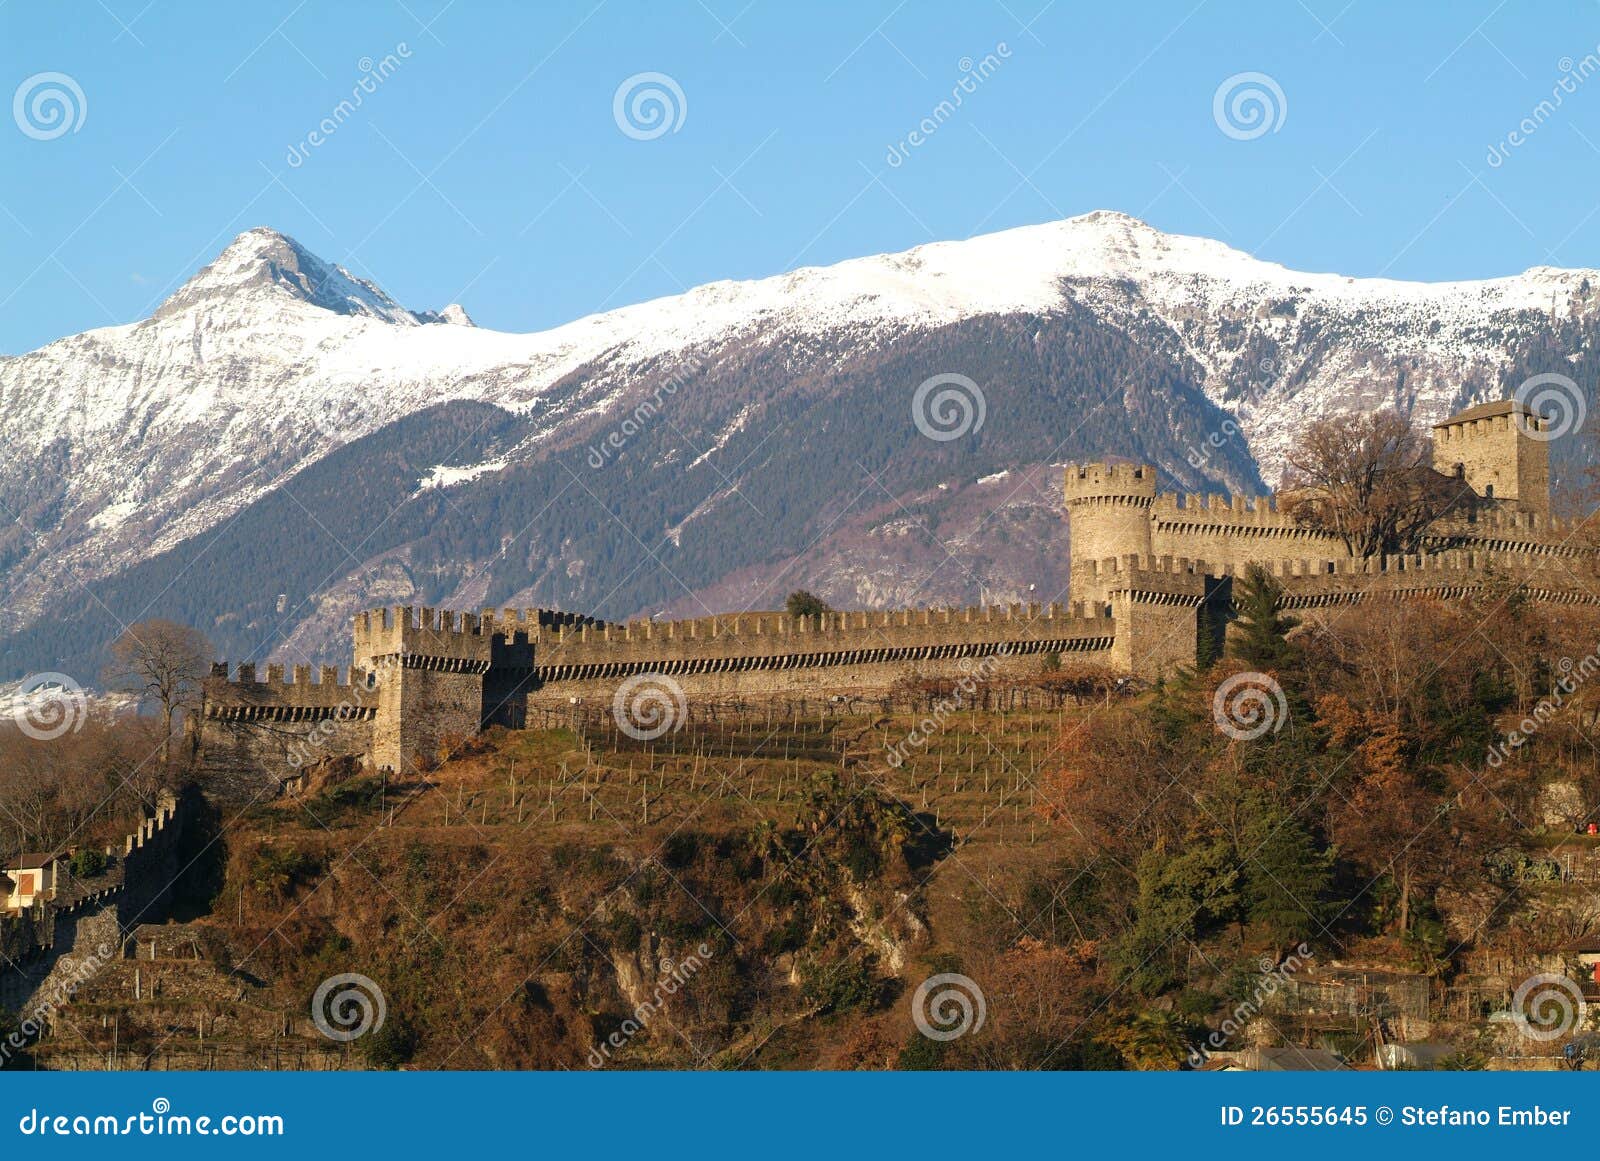 castle montebello at bellinzona